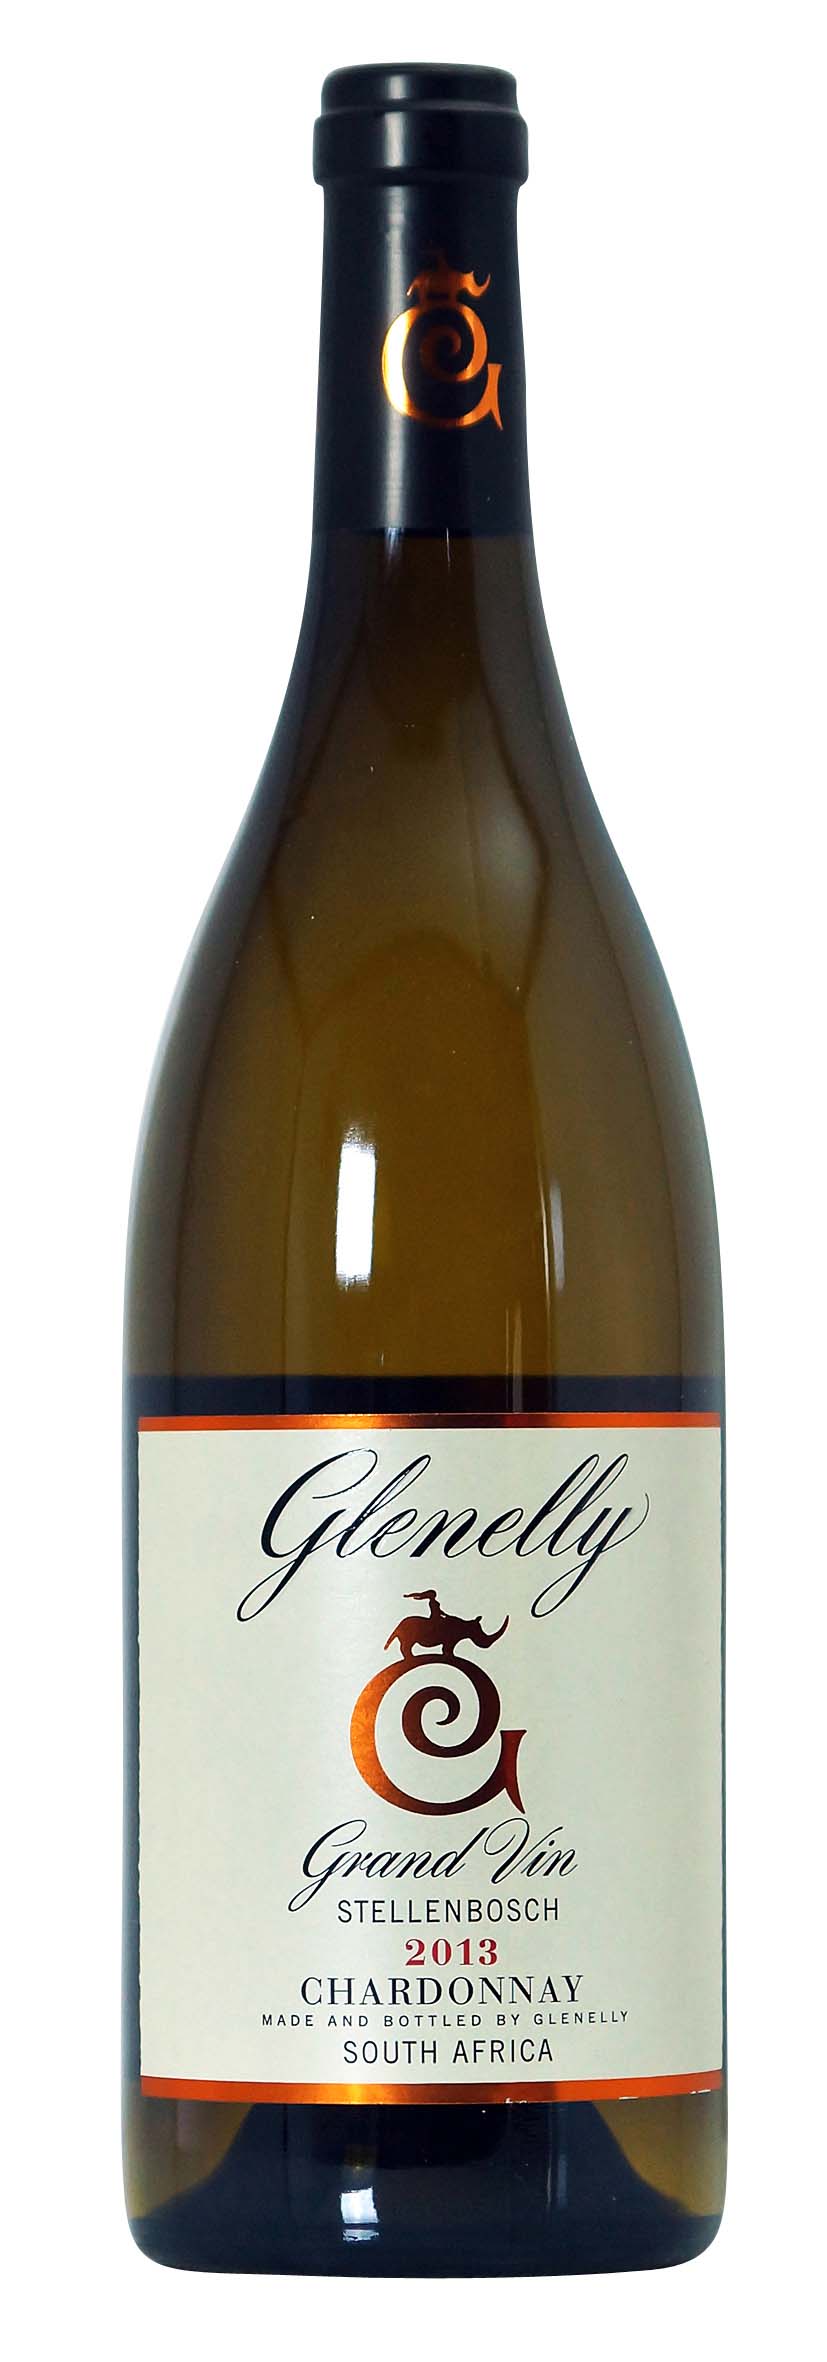 Glenelly Grand Vin Chardonnay 2013